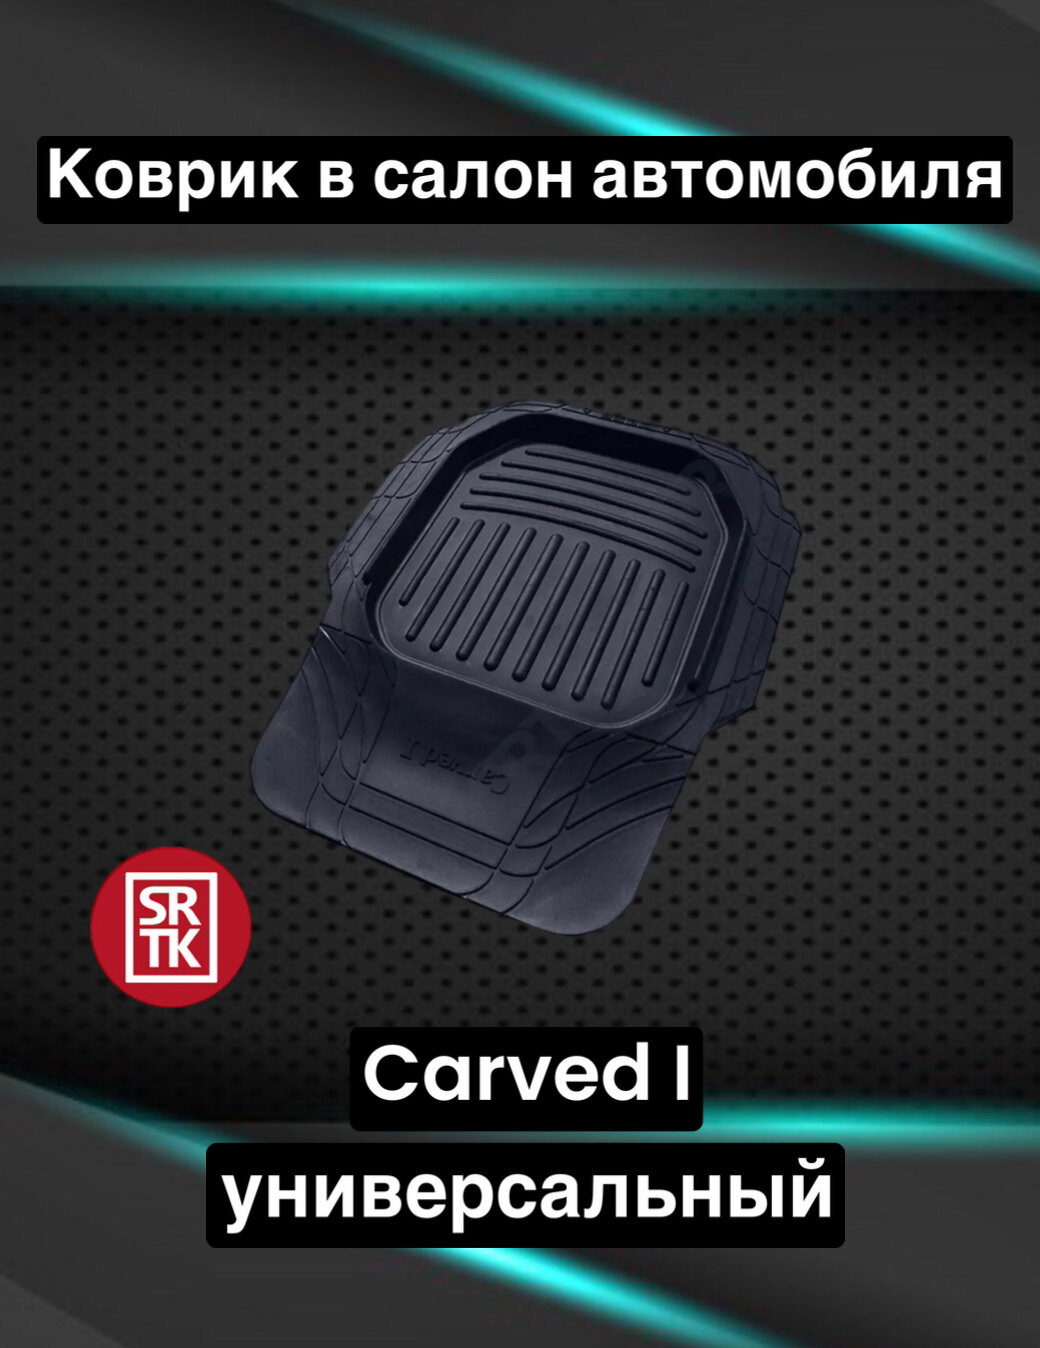 Коврик резиновый водительский универсальный Карвед 1/Carved I/ SRTK арт. VOD. CARVED1.03037